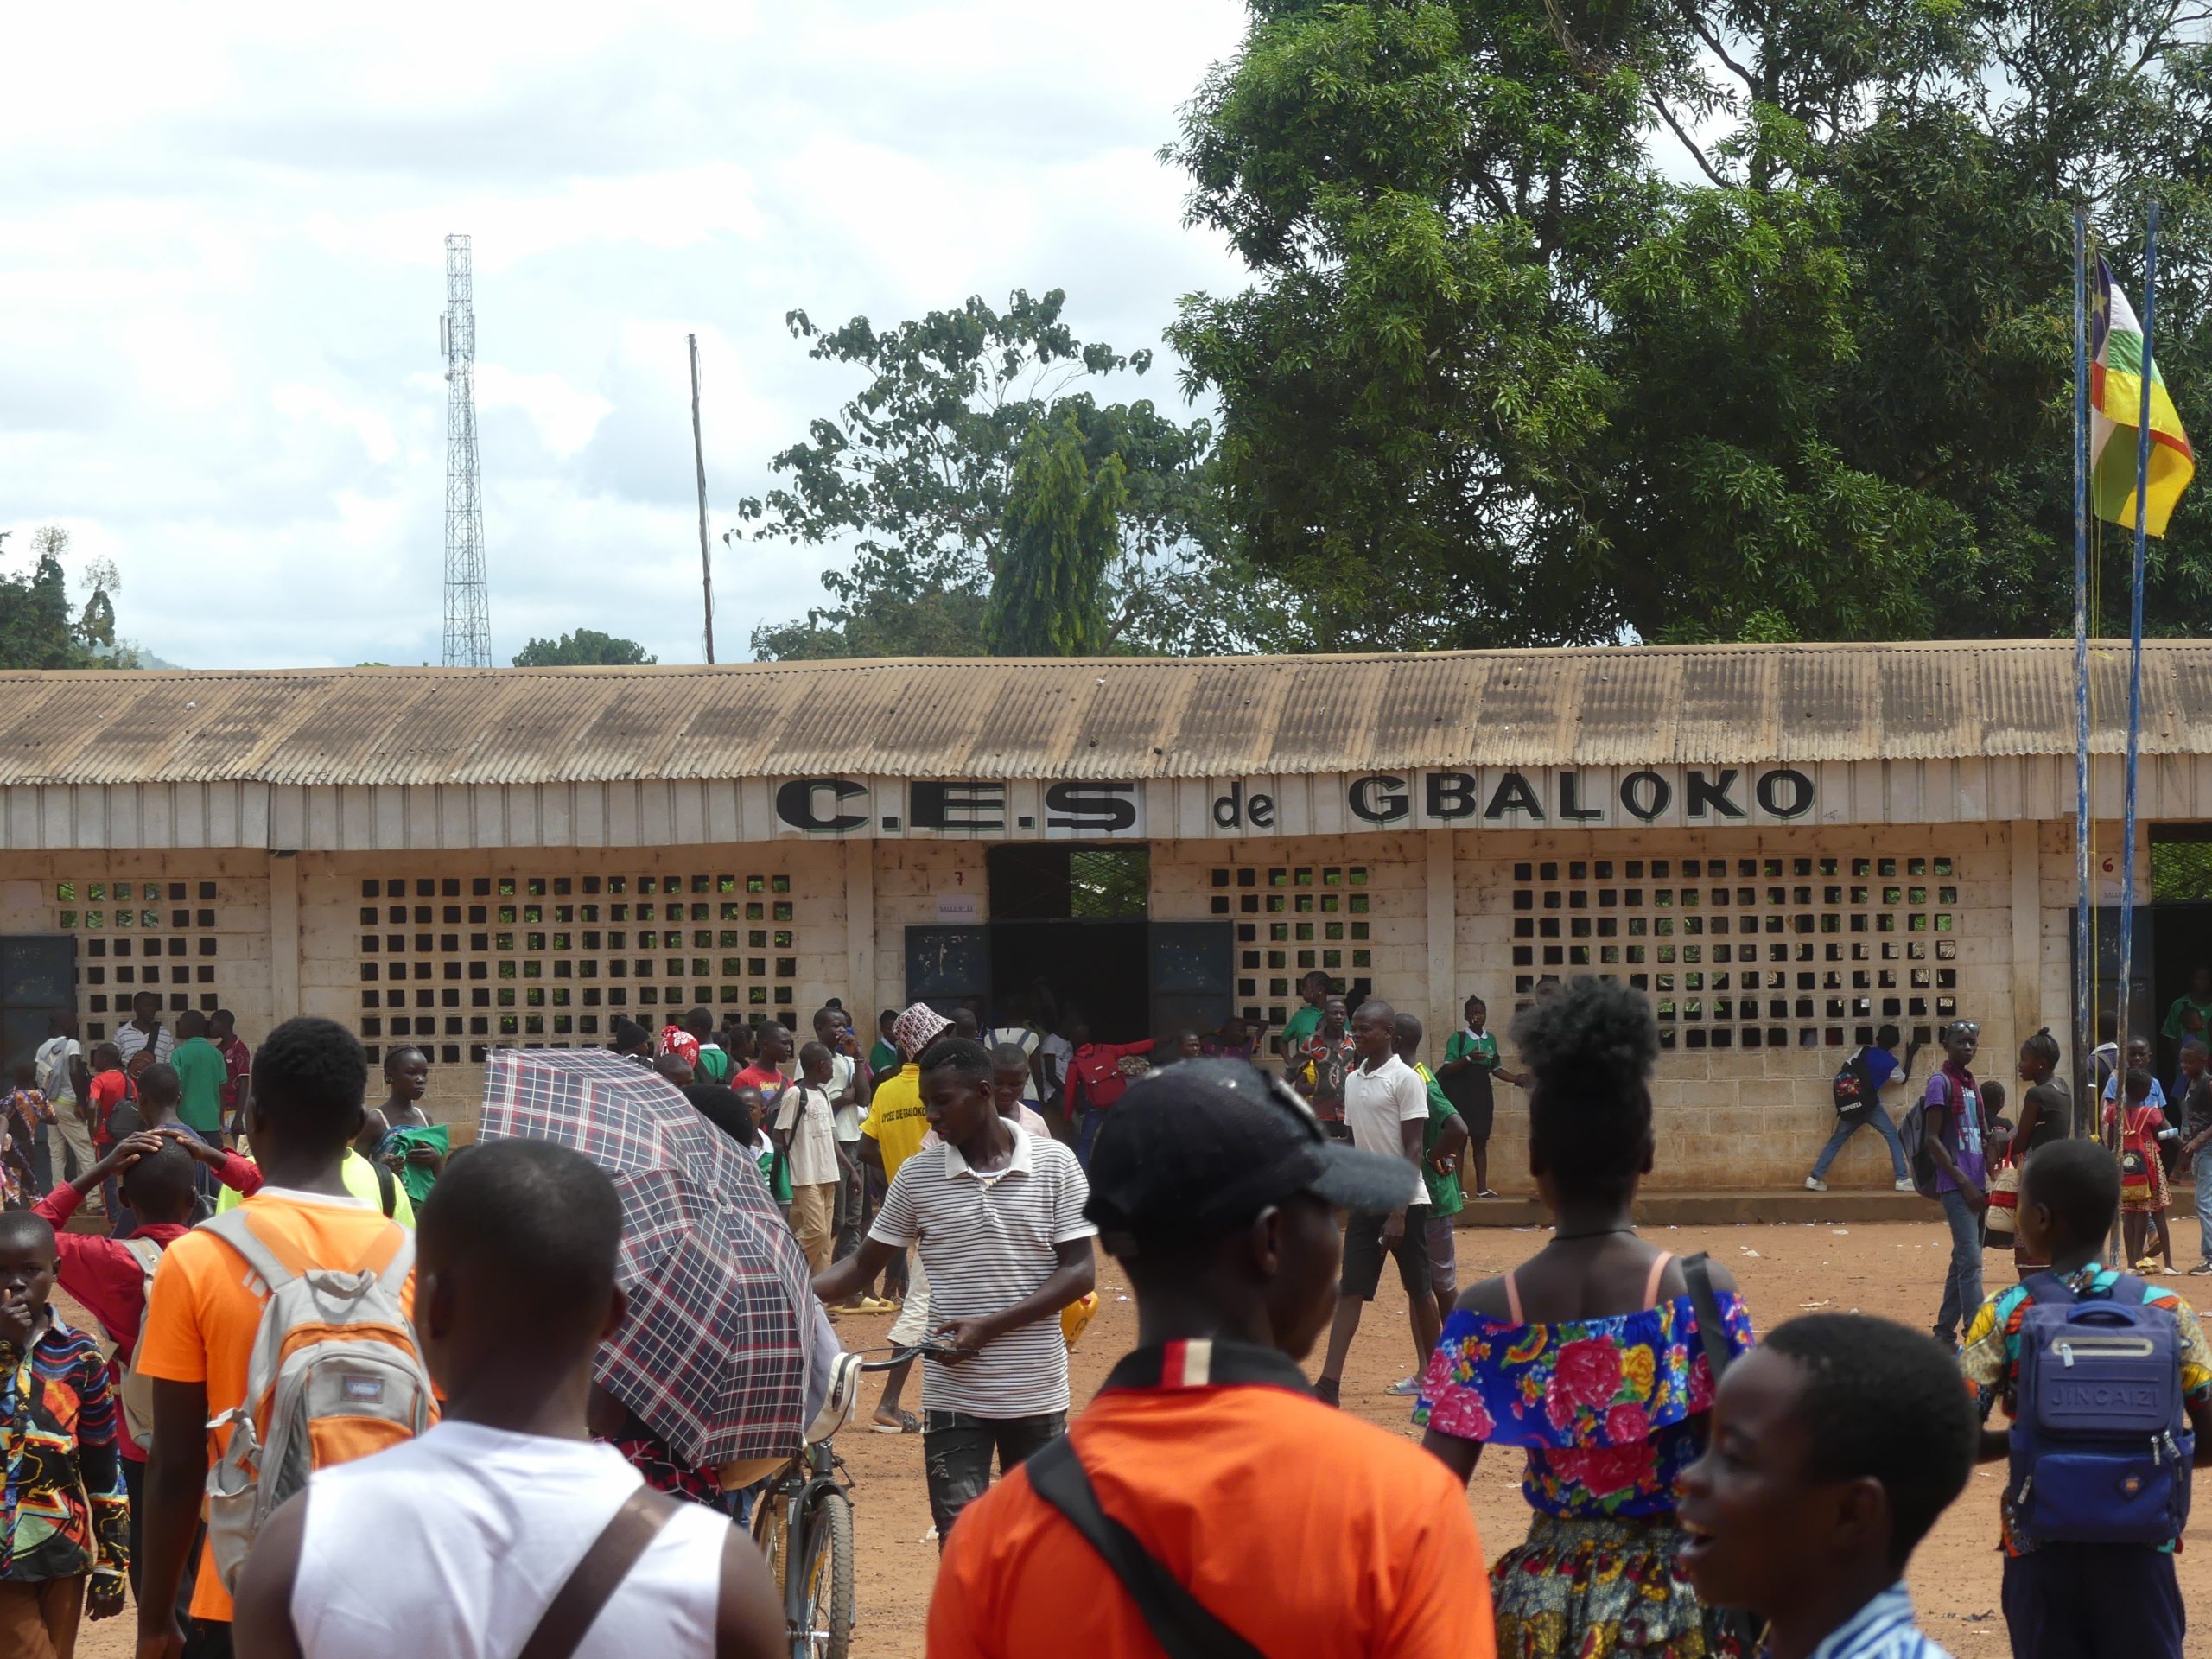 Centrafrique : mécontentement au collège de Gbaloko après l’augmentation des frais d’inscription